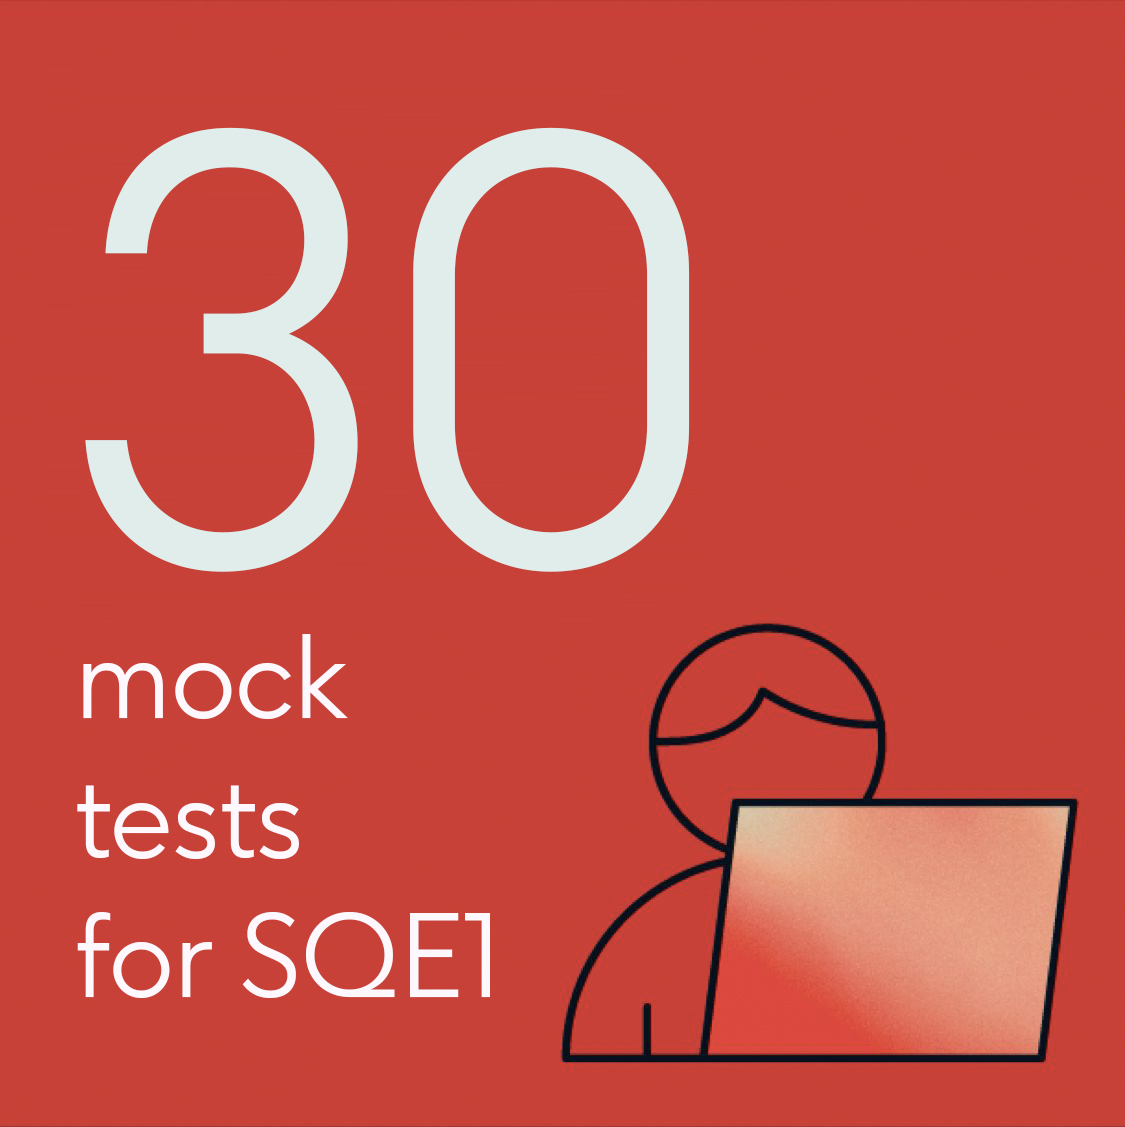 30 mock tests for SQE1